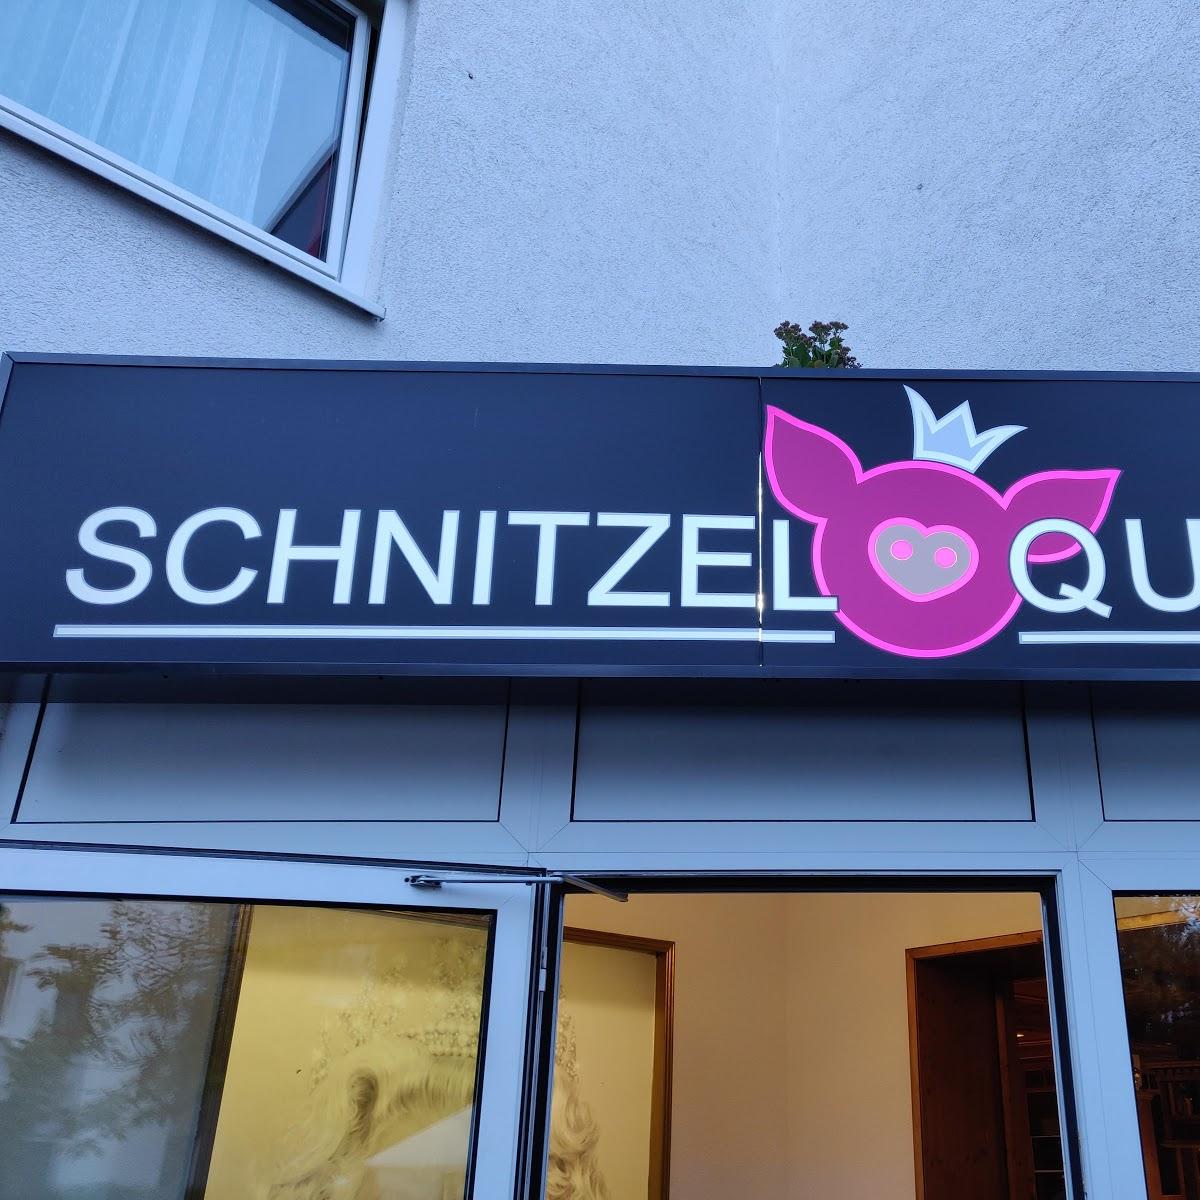 Restaurant "Schnitzel Queen" in  Wiesbaden